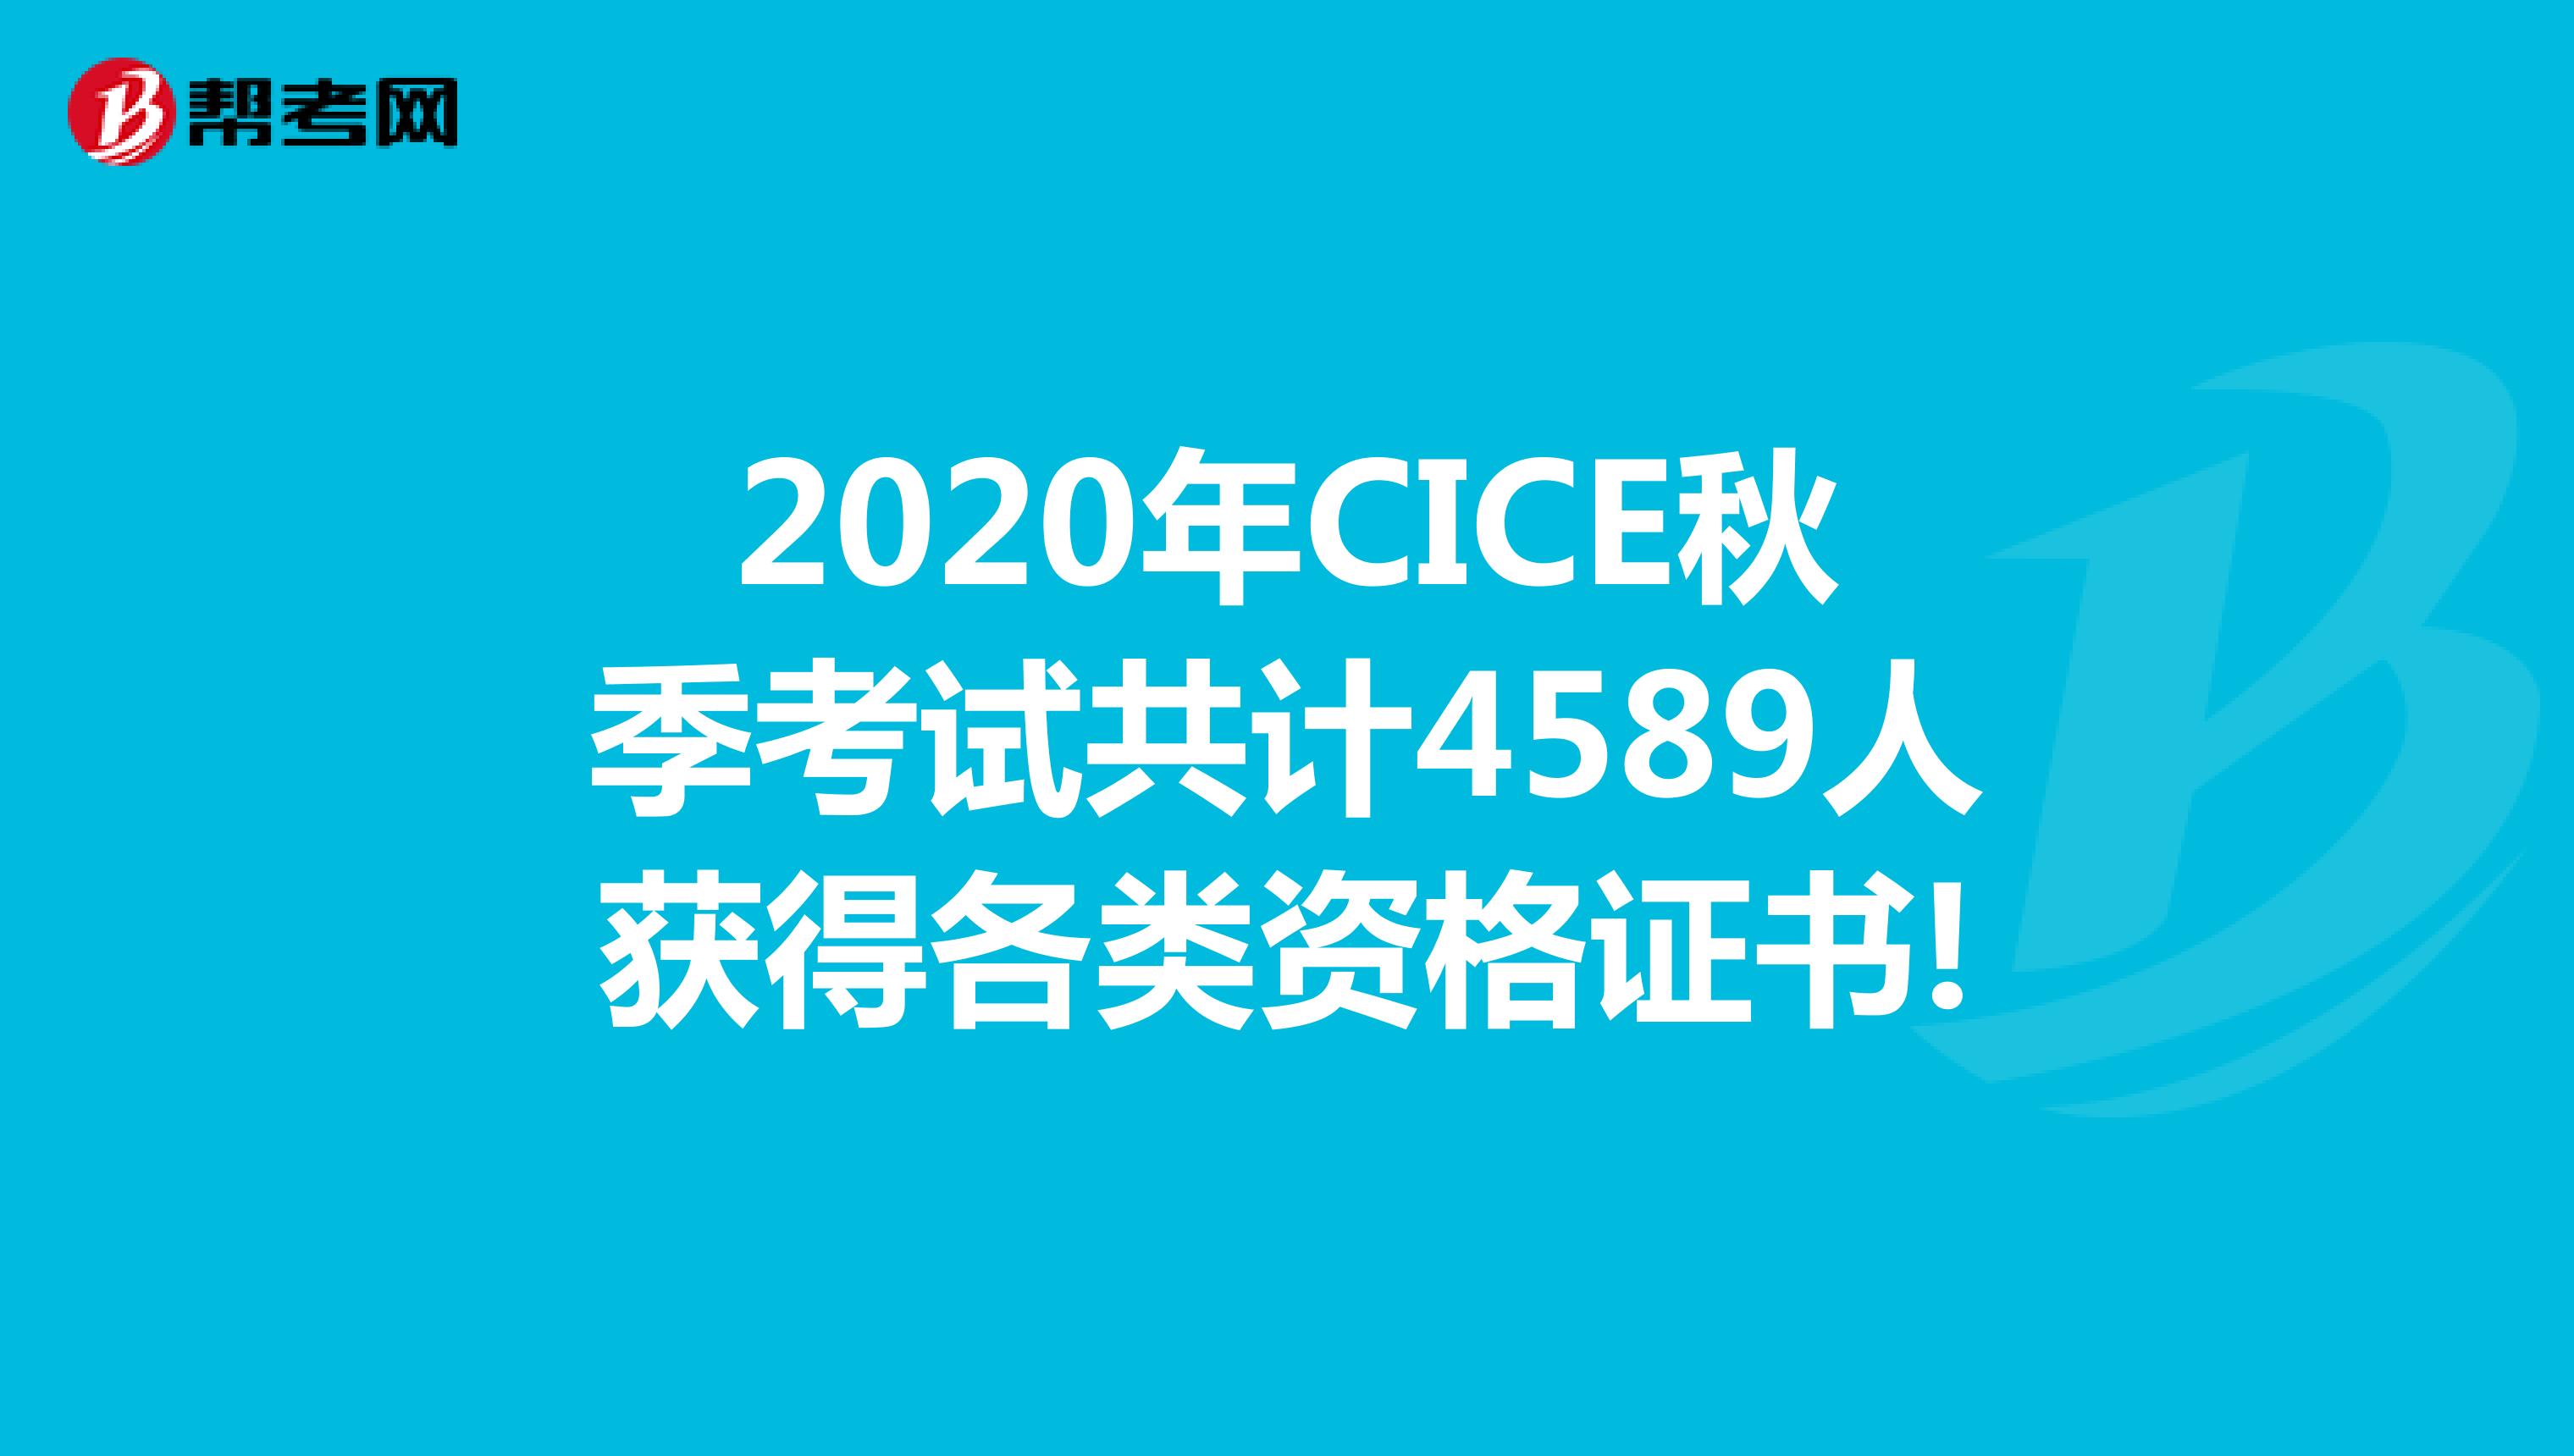 2020年CICE秋季考试共计4589人获得各类资格证书!